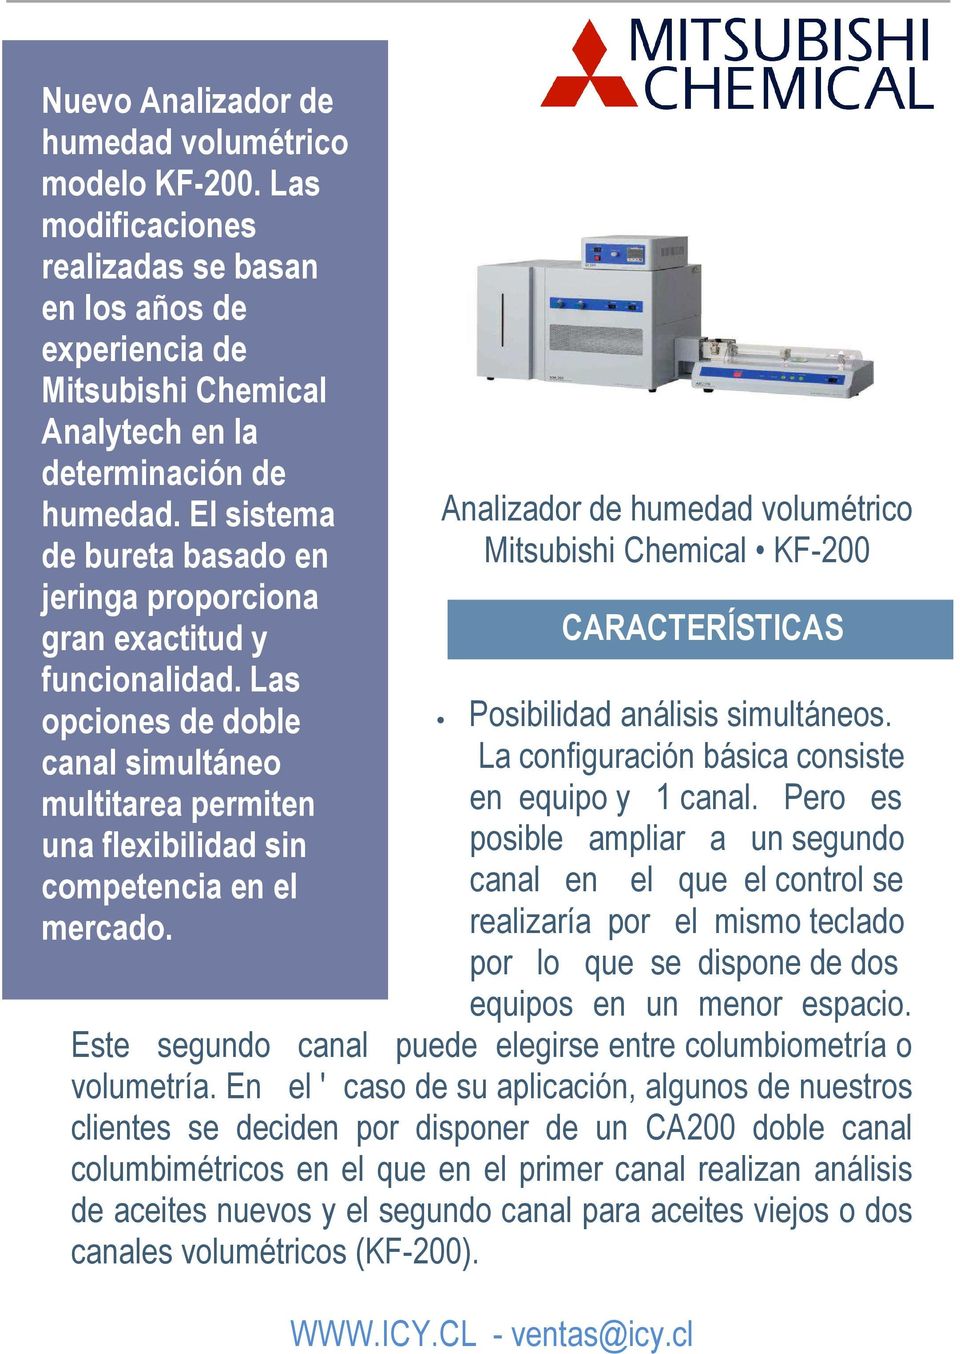 Analizador de humedad volumétrico Mitsubishi Chemical KF-200 Posibilidad análisis simultáneos. La configuración básica consiste en equipo y 1 canal.